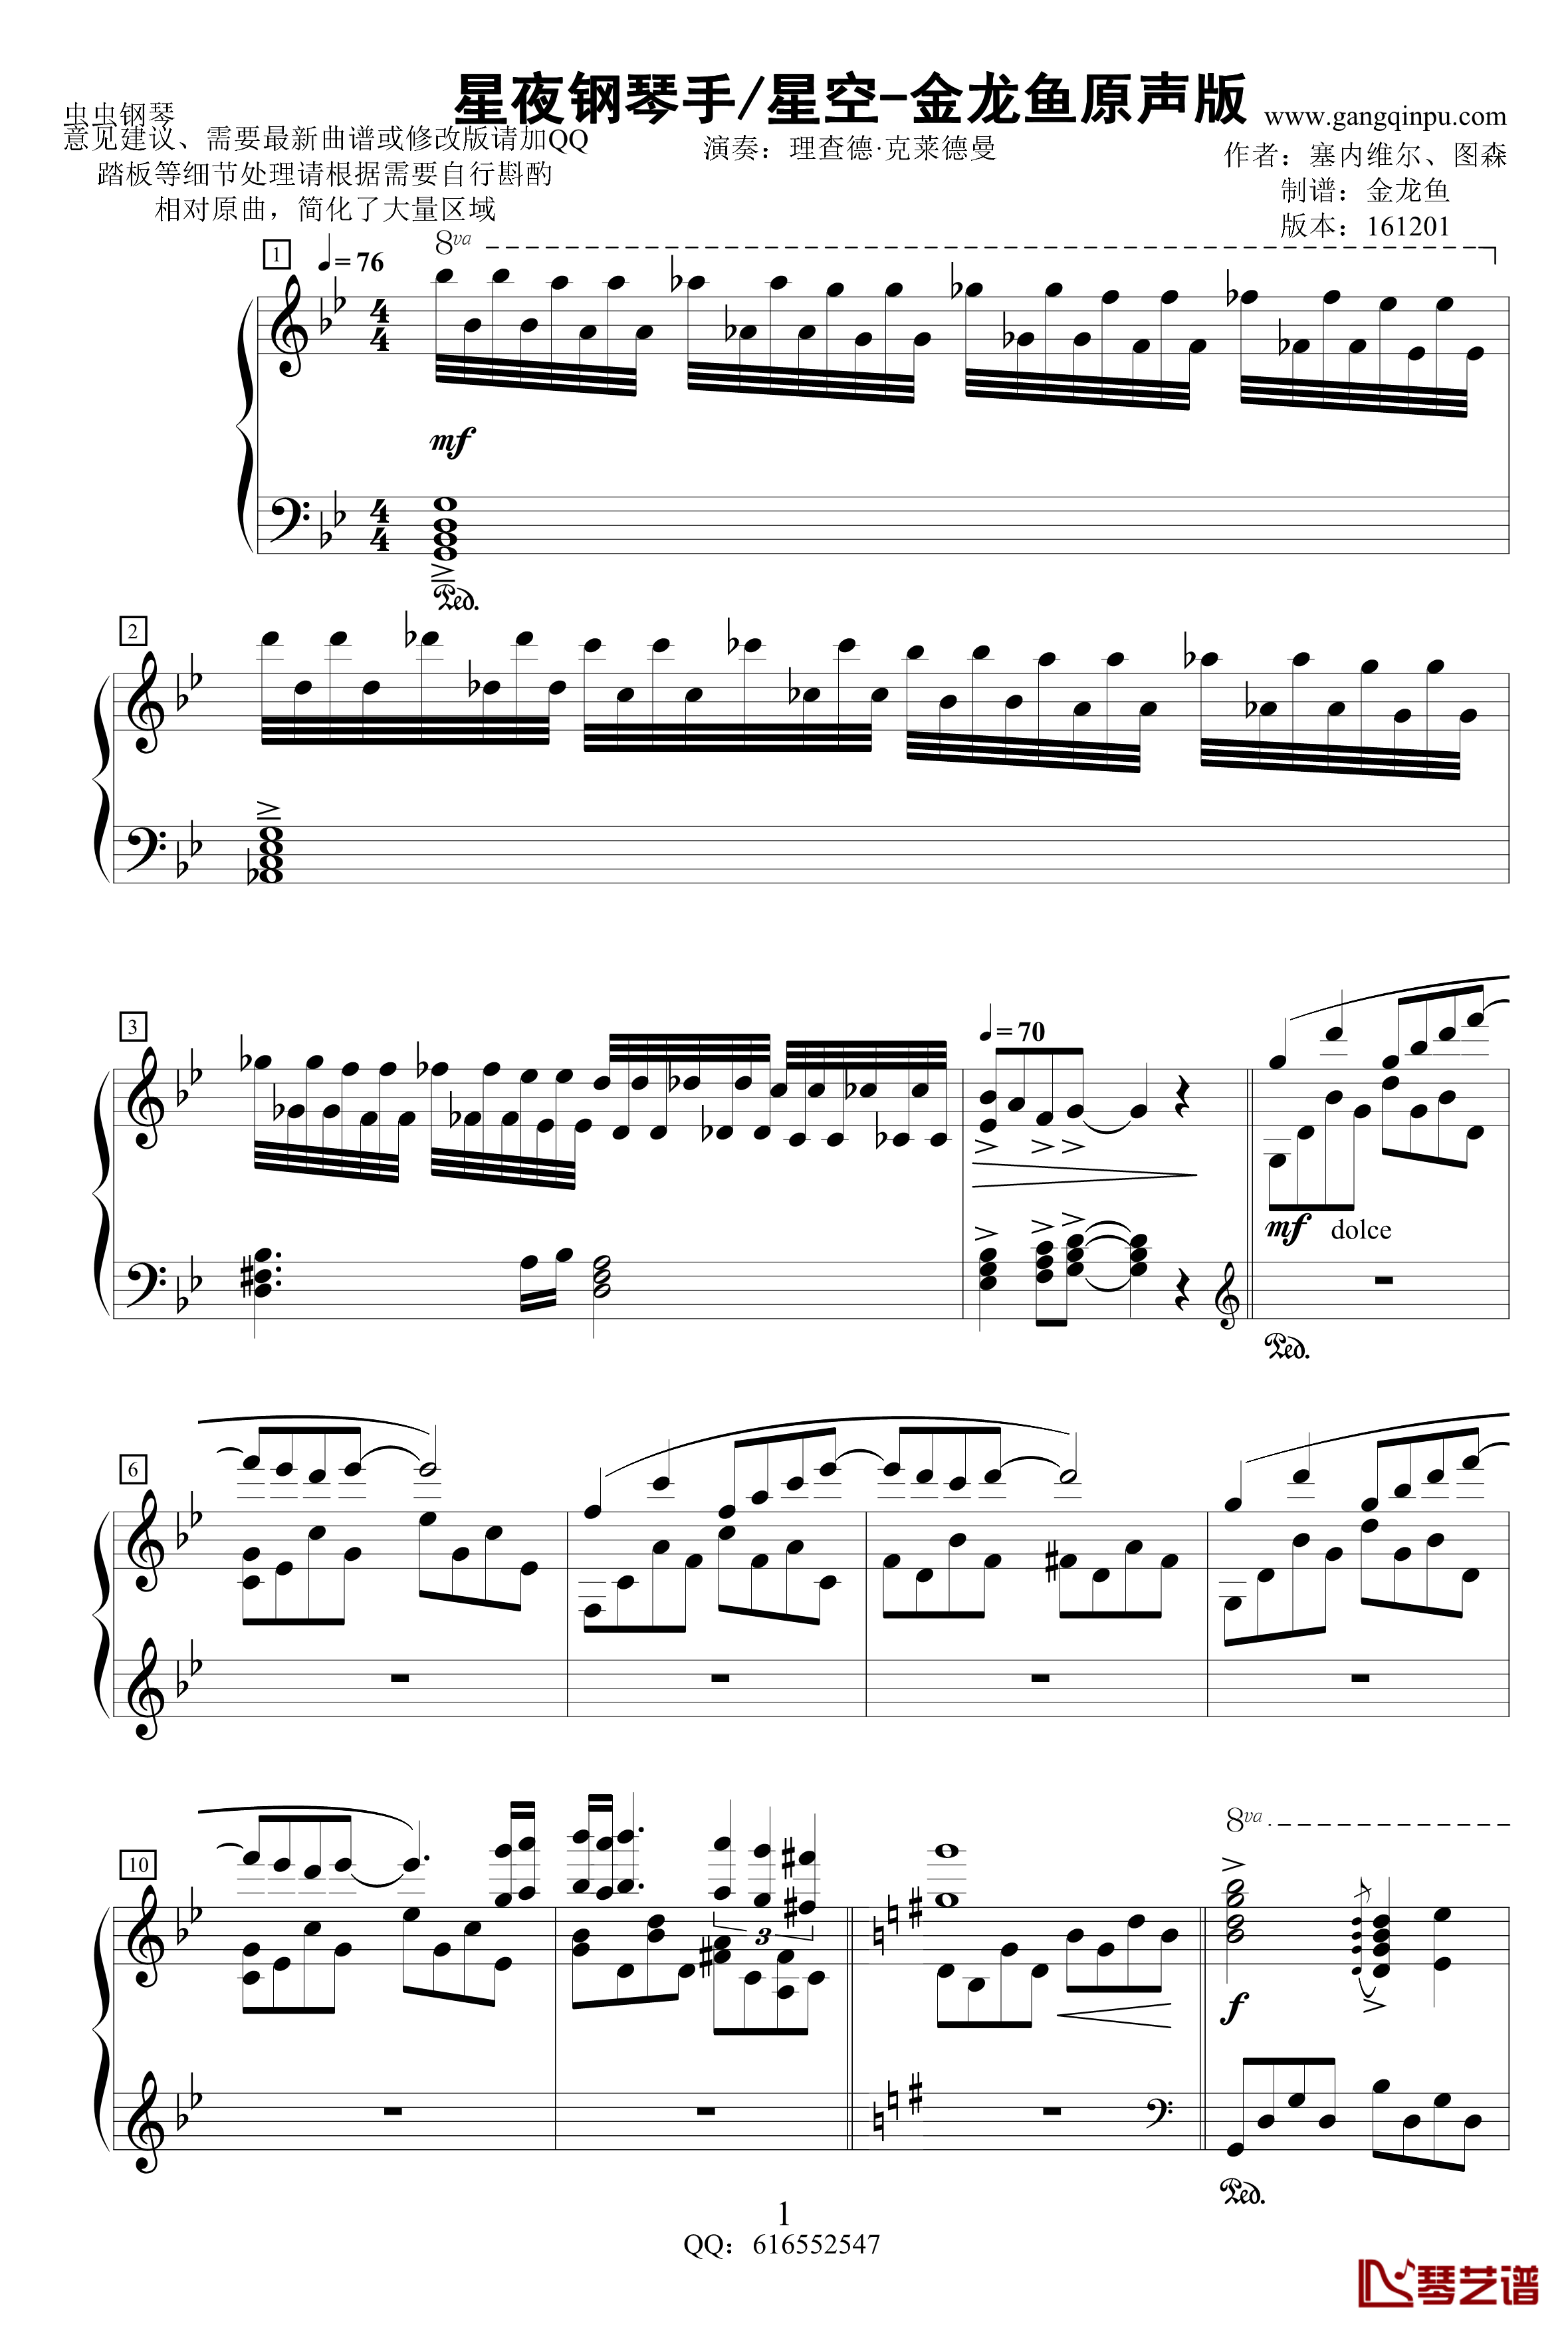 星空/星夜钢琴手-金龙鱼原声版161201钢琴谱-克莱德曼1